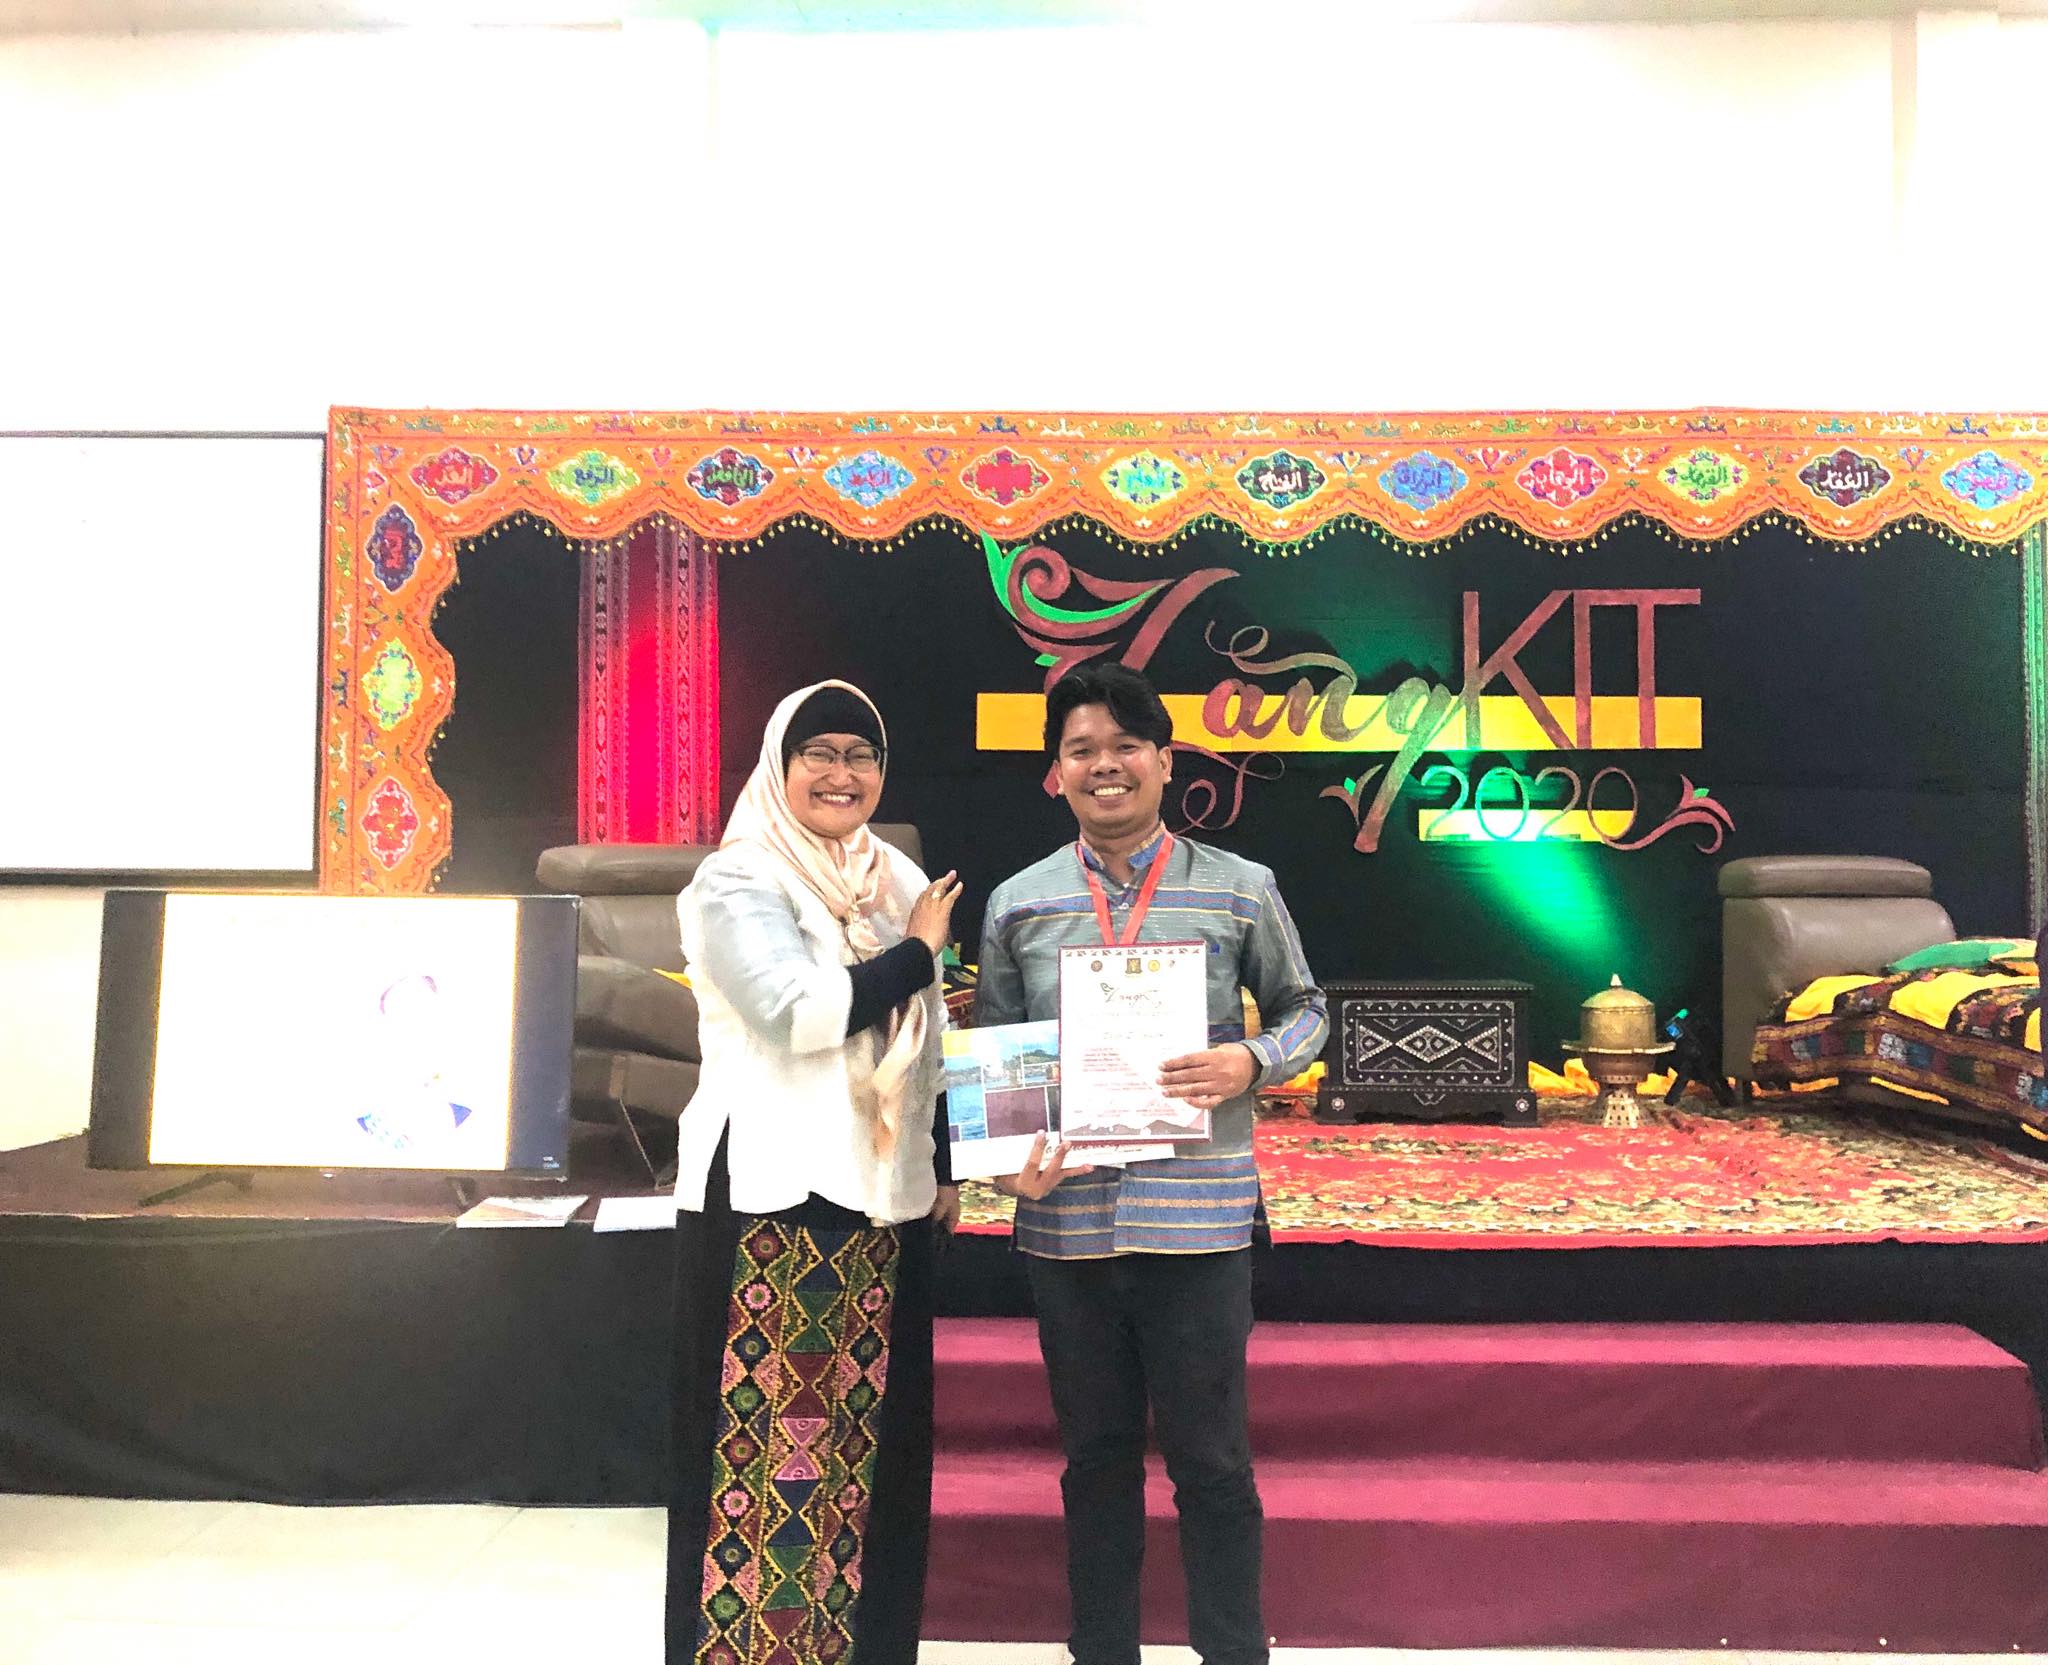 Prof. Sajed S. Ingilan bags award at LangKIT 2020